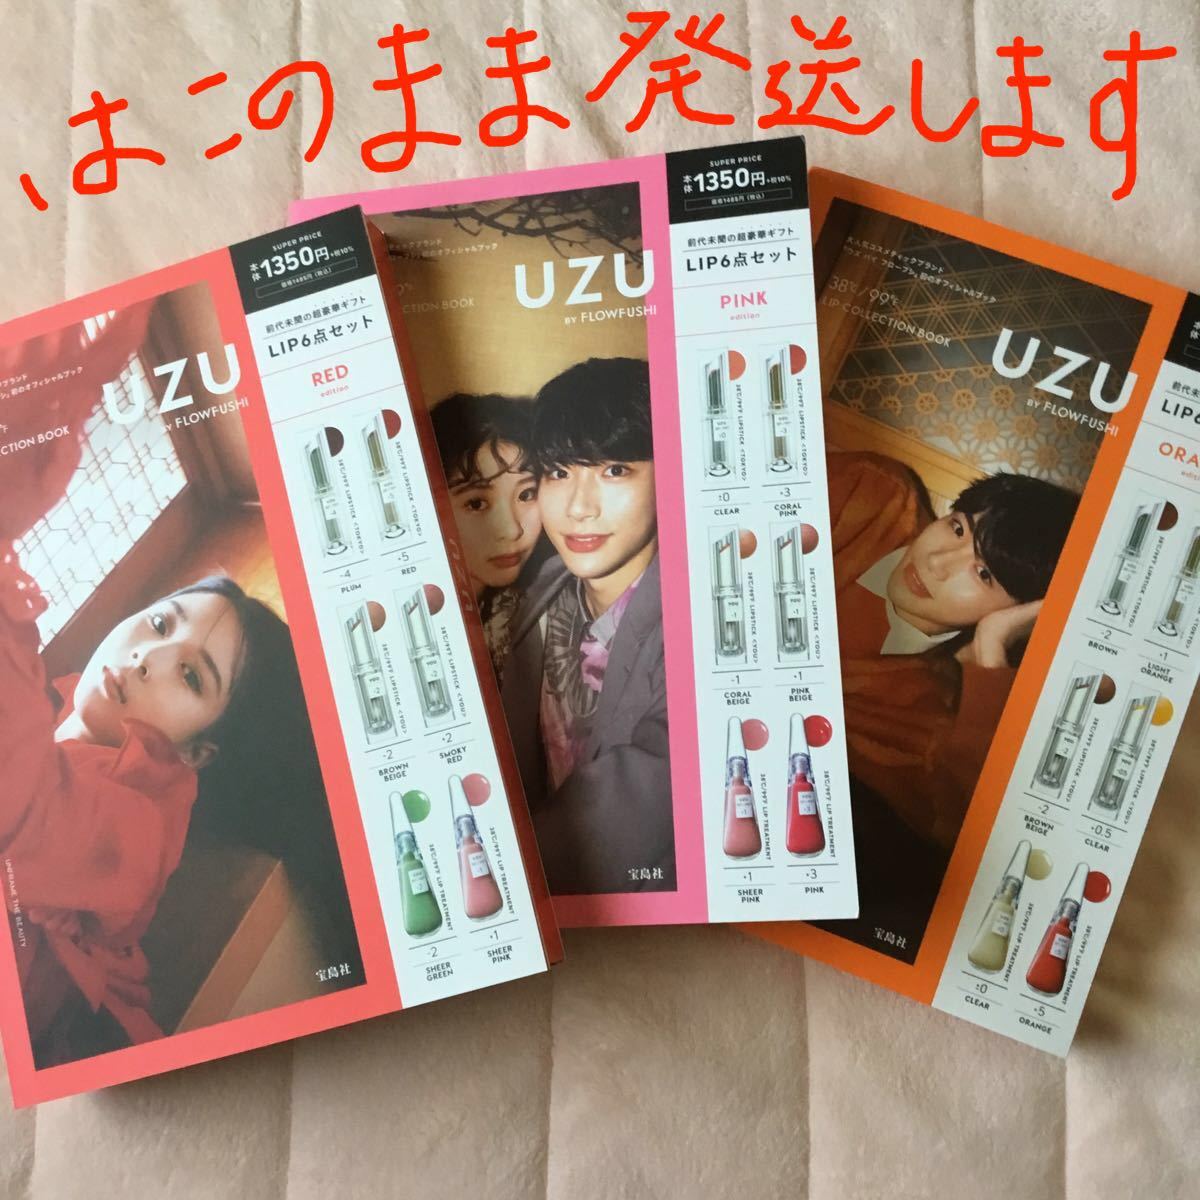 新品 未開封 UZU BY FLOWFUSHI LIP COLLECTION ORANGE PINK RED 3冊セット 